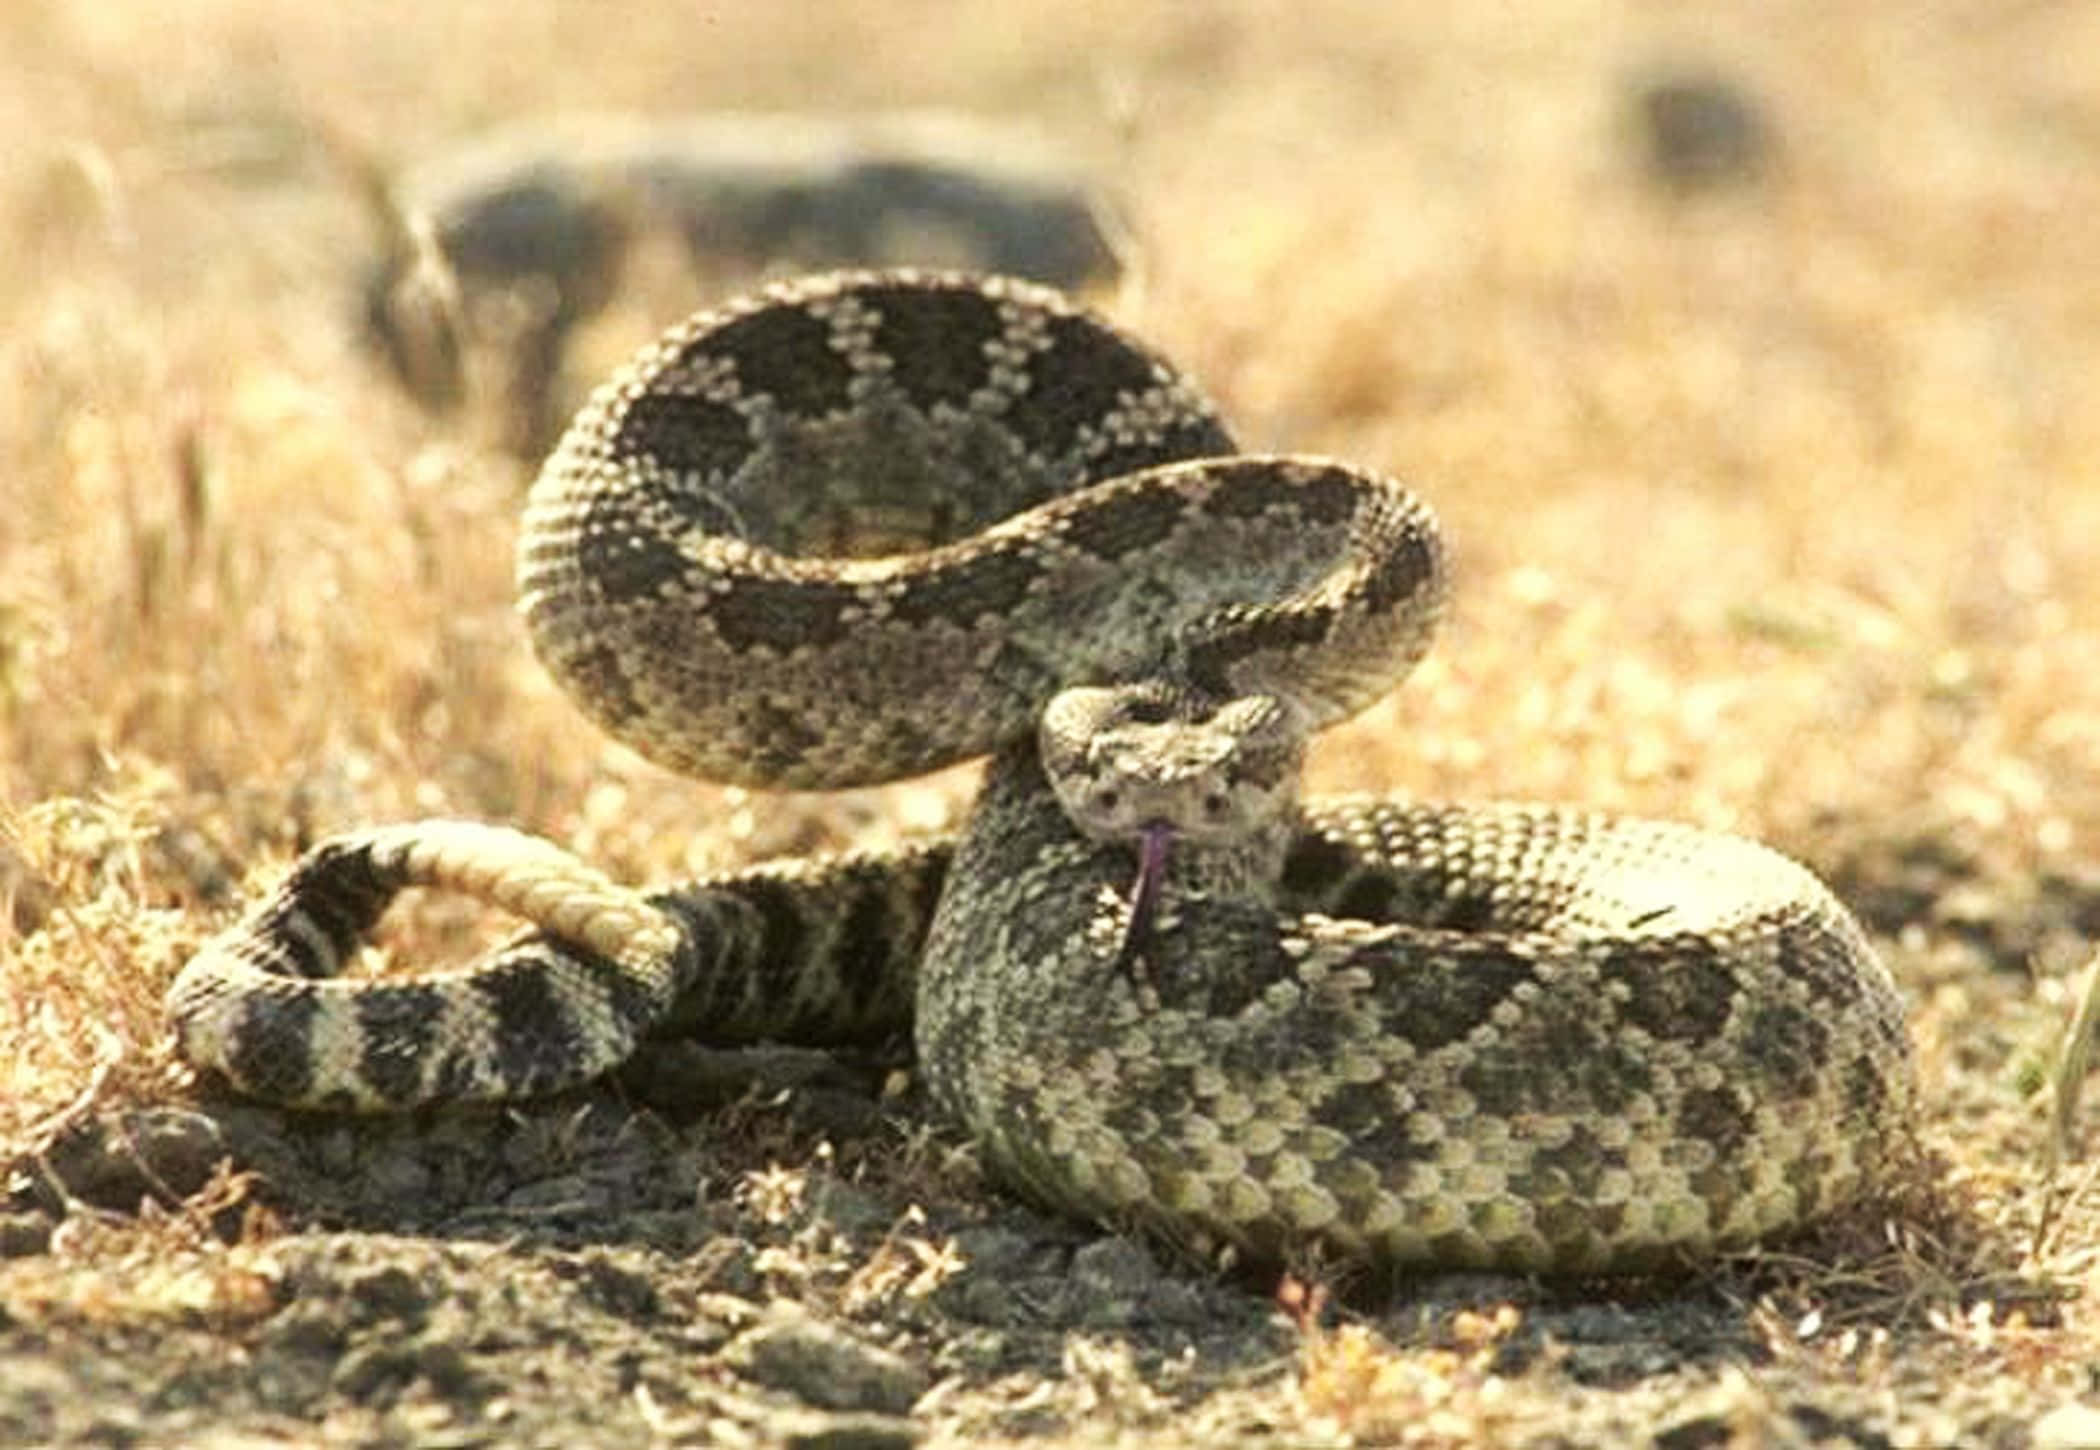 A rattlesnake coils near a desert rock.